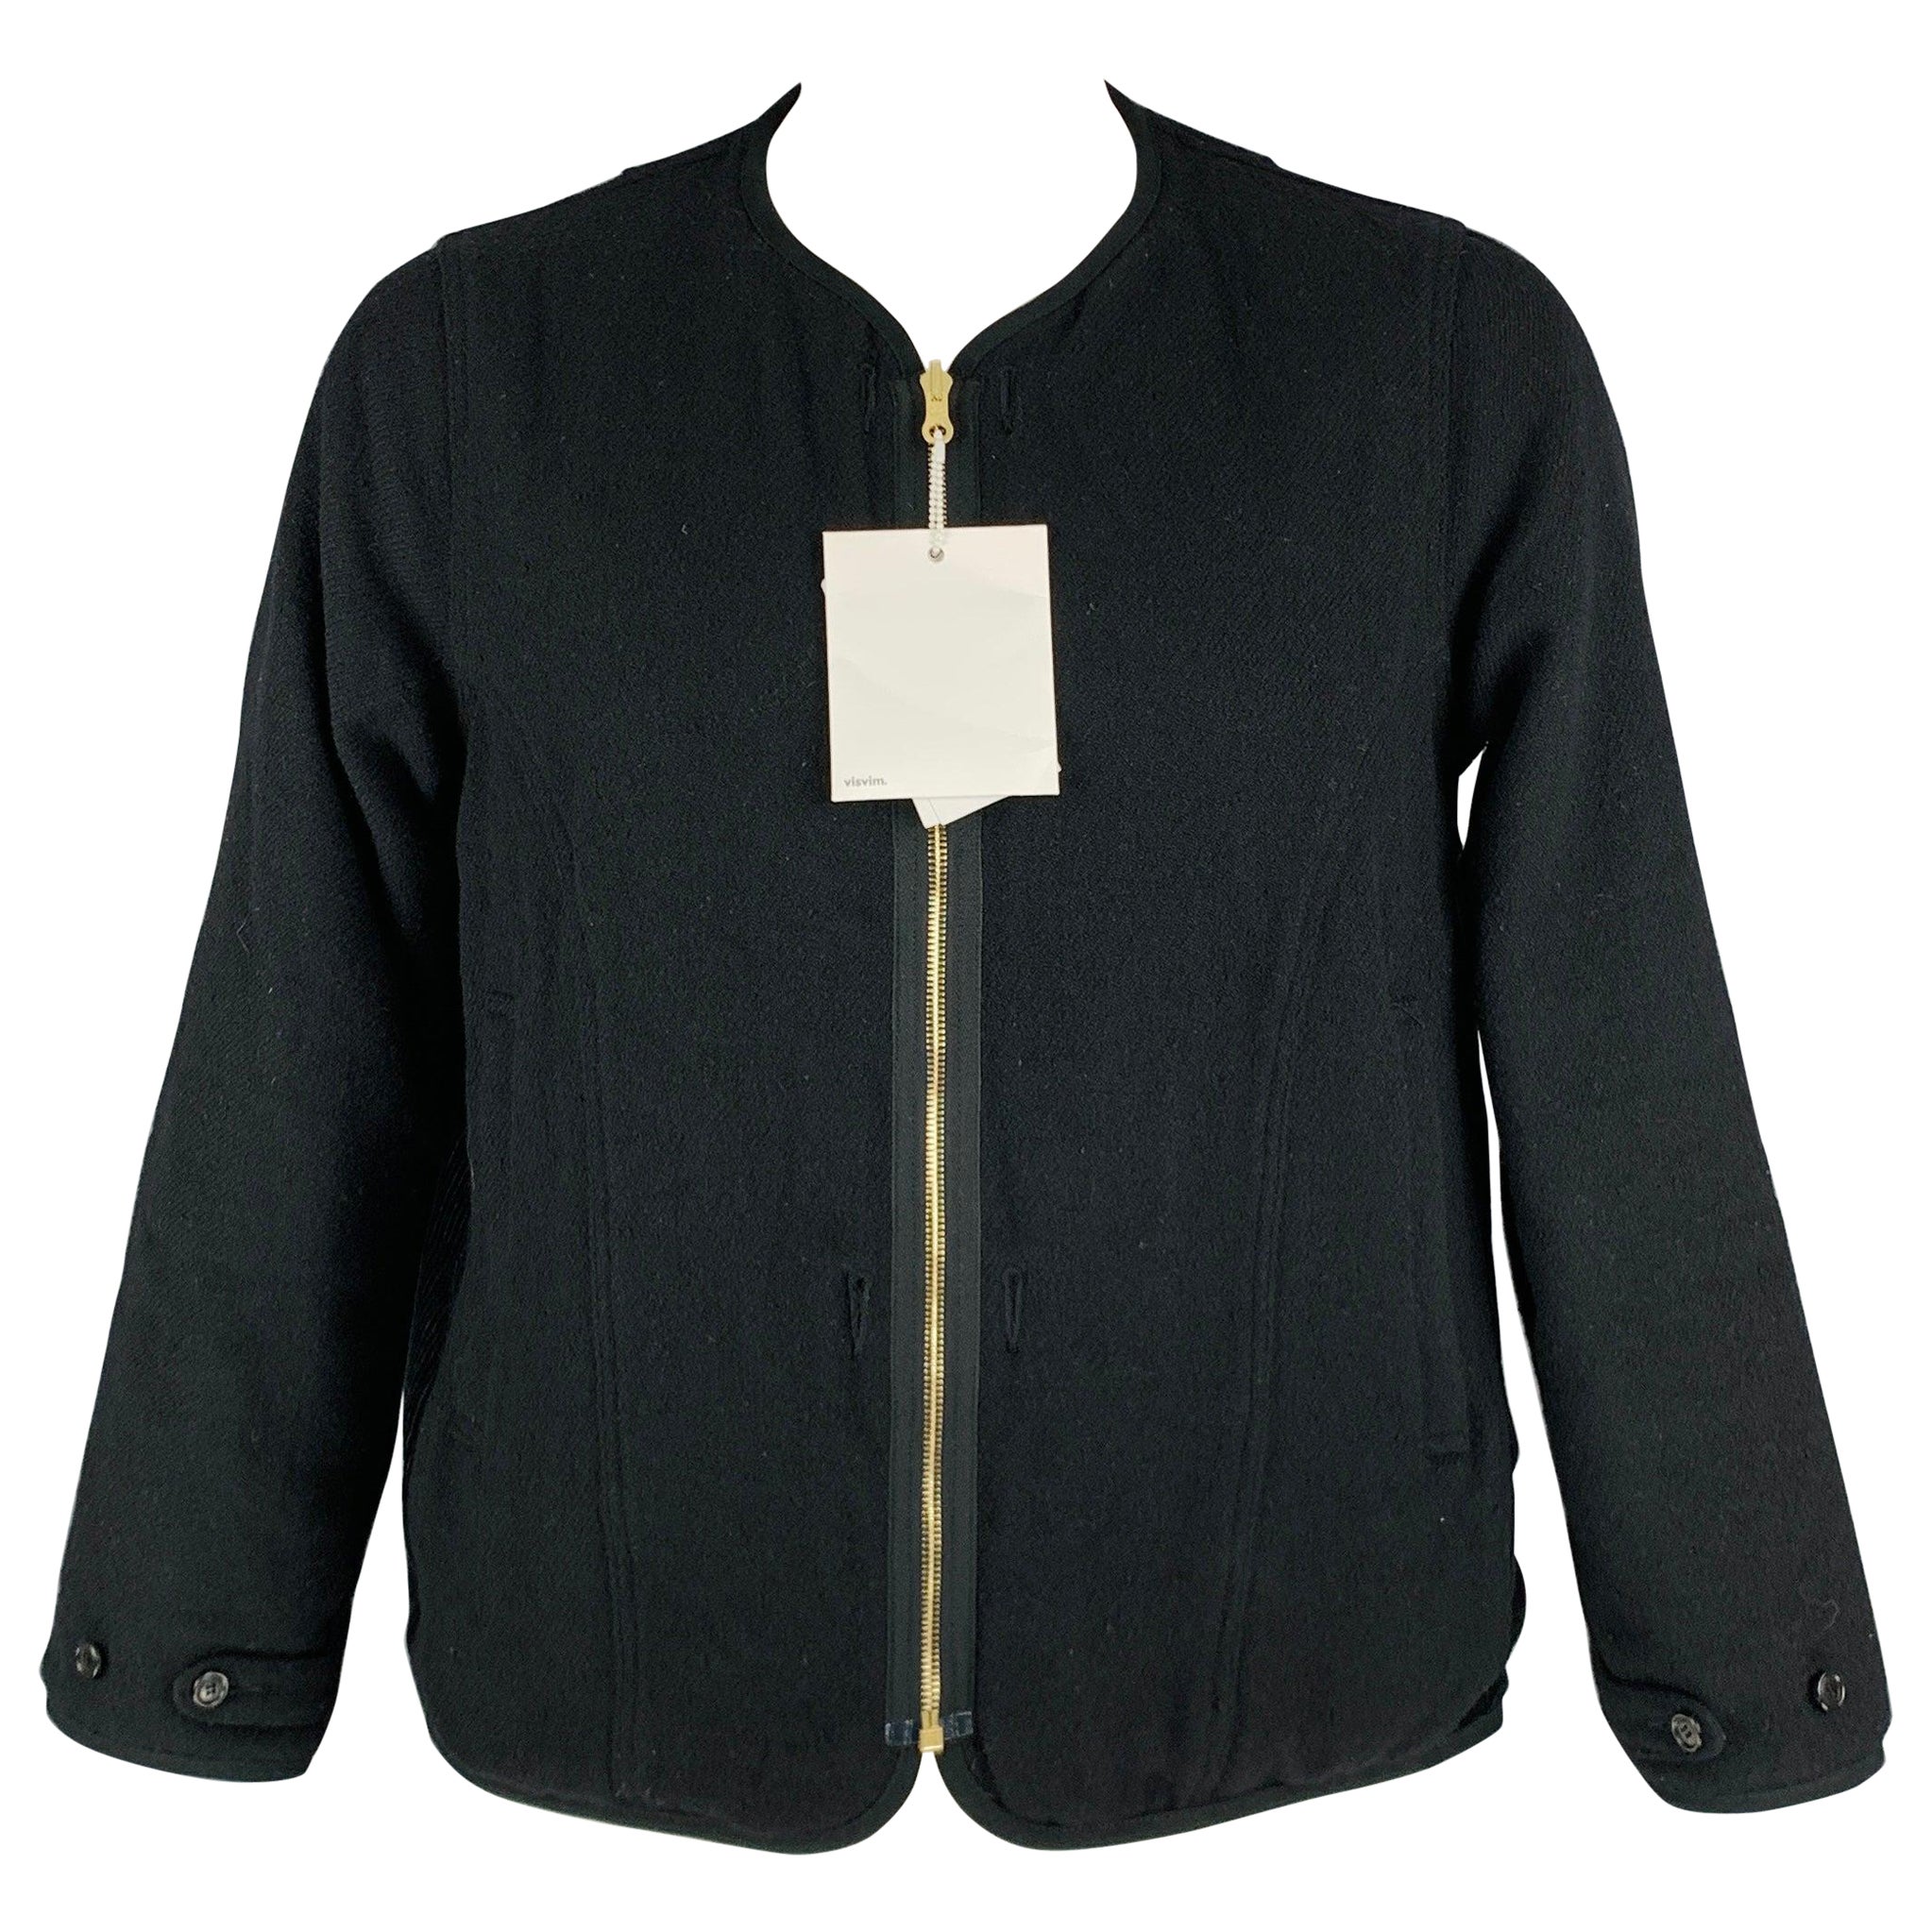 VISVIM -Wawona Down Jacket -Size L Black Beige Tweed Wool Linen Zip Up Coat For Sale